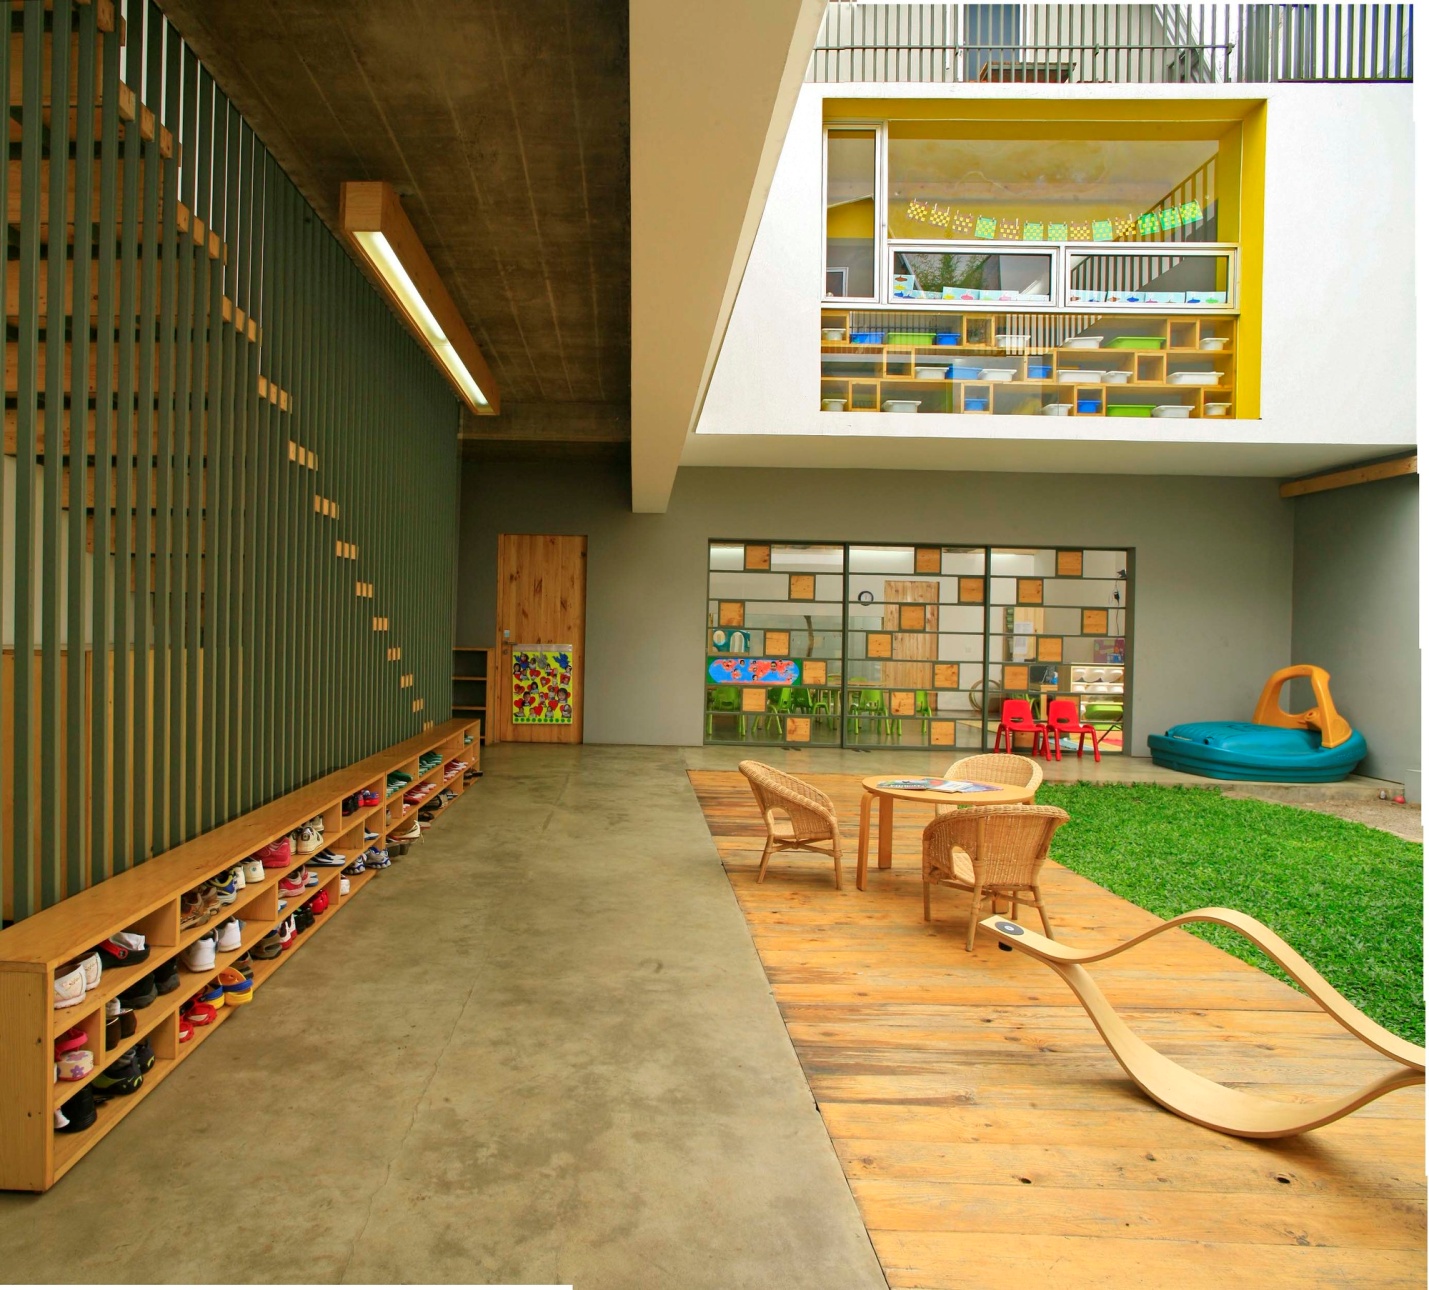 Качественный детский сад. Садик Sjötorget Kindergarten, Стокгольм (Швеция). Современный детский сад. Креативное пространство в школе.